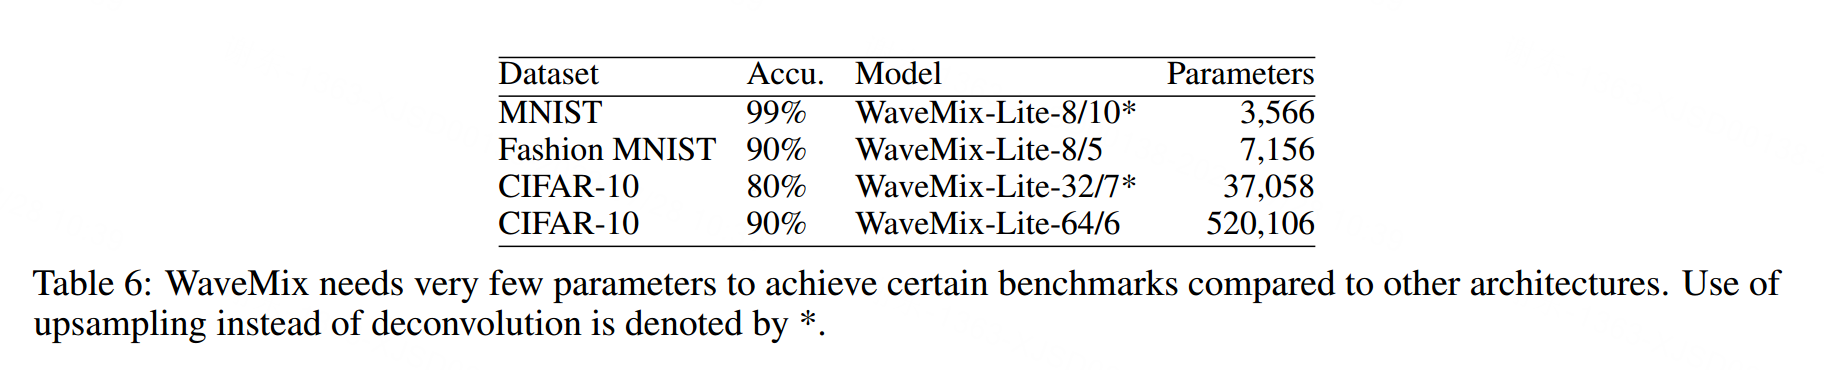 【深度学习】WaveMix: A Resource-efficient Neural Network for Image Analysis 论文